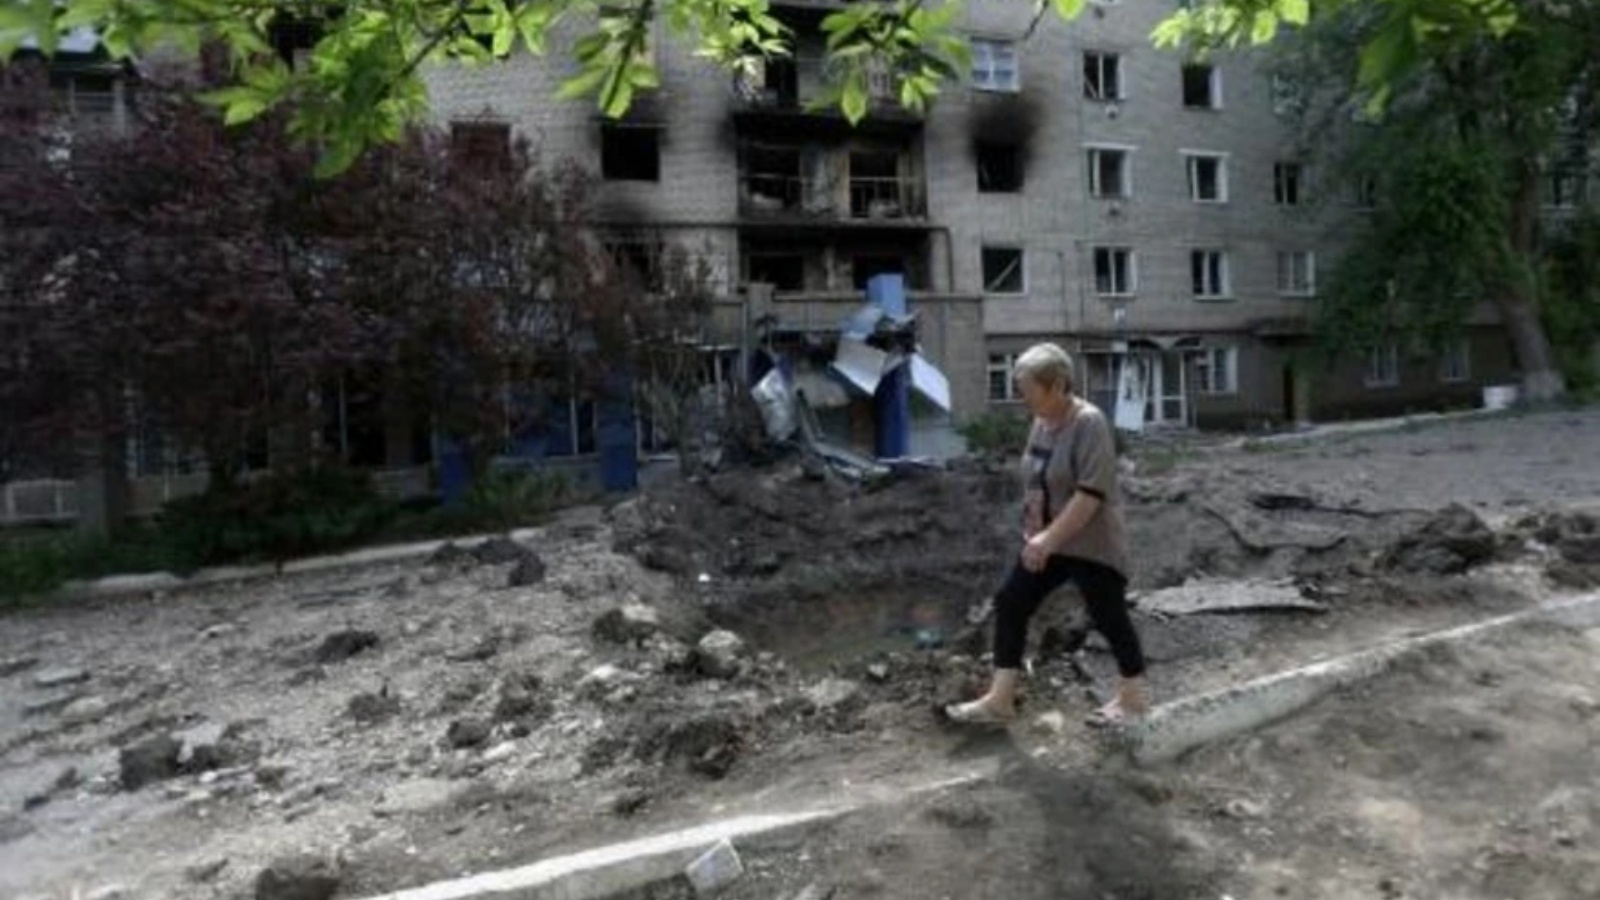 مبنى سكني في حي تعرض للقصف في سيفيرسك في منطقة دونيتسك بأوكرانيا في 23 يونيو 2022 